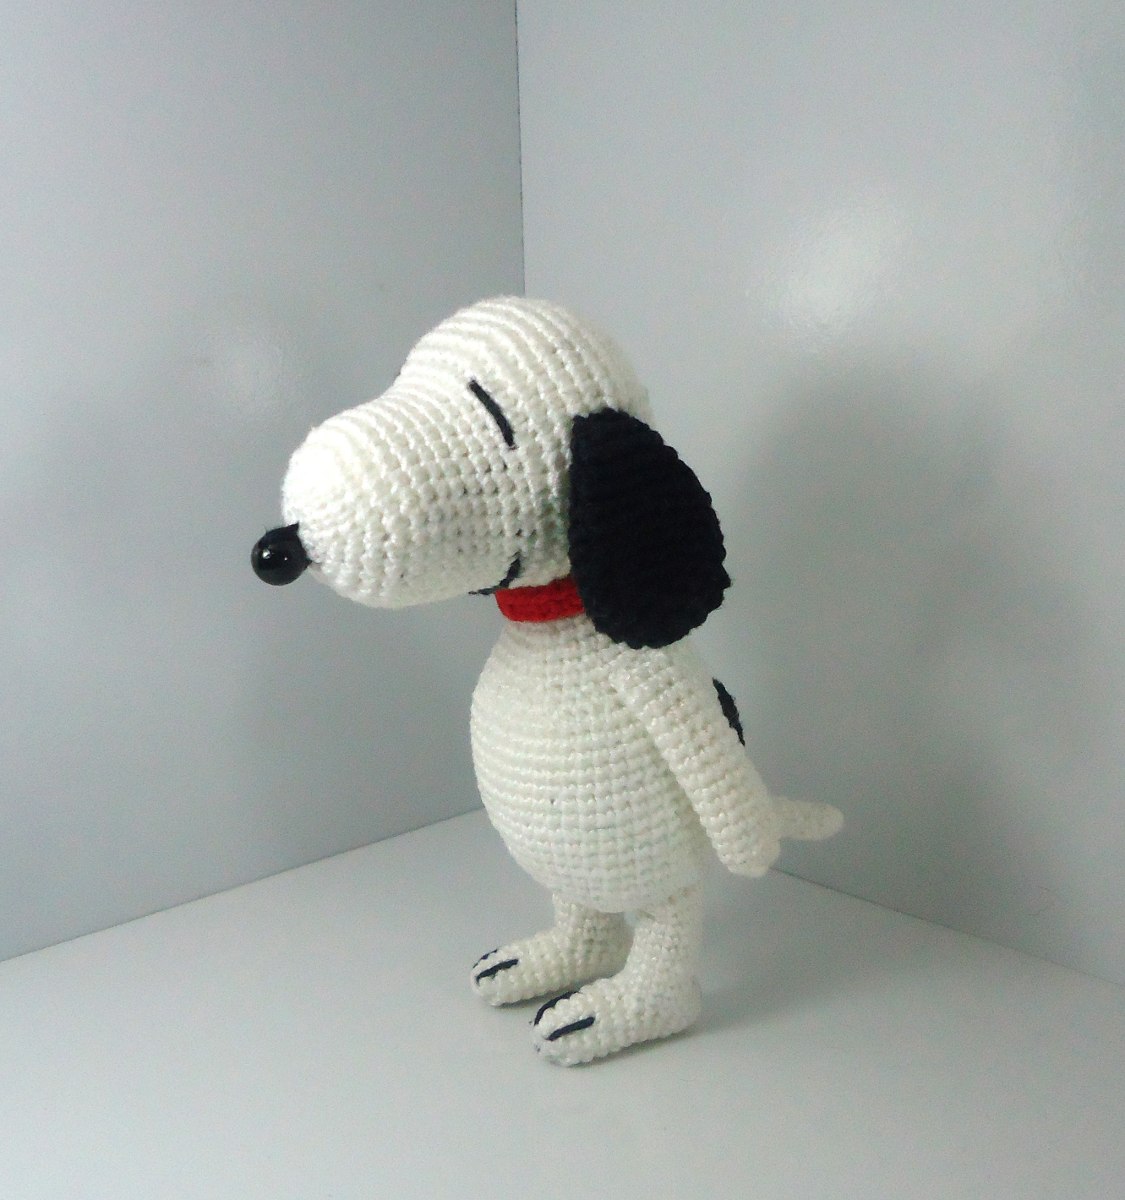 Boneco(amigurumi) Snoopy De Croche - R$ 30,00 em Mercado Livre